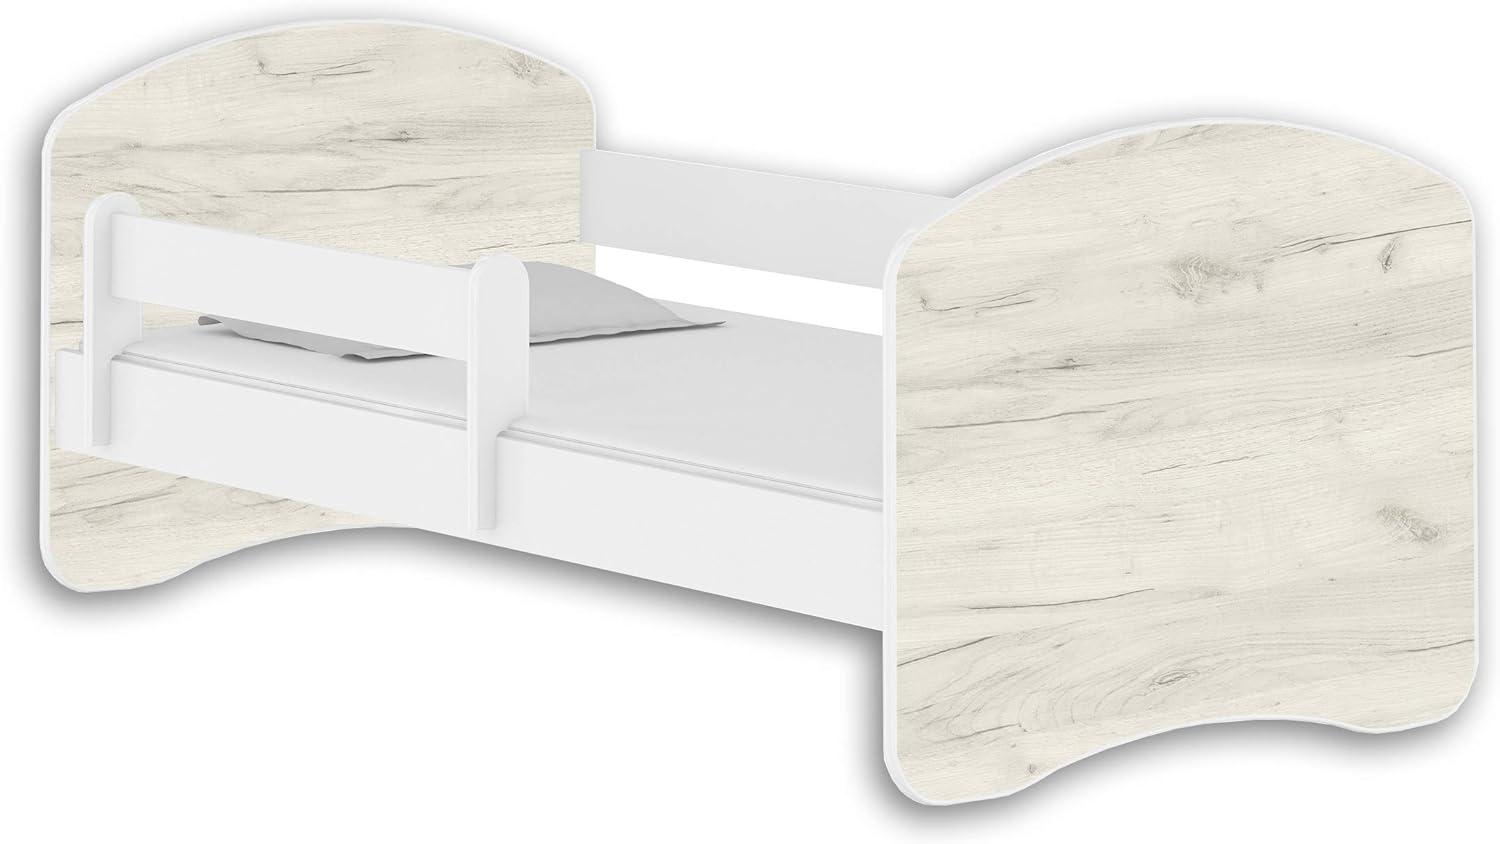 Jugendbett Kinderbett mit einer Schublade mit Rausfallschutz und Matratze Weiß ACMA II 140 160 180 (140x70 cm, Weiß - Eiche Weiß) Bild 1